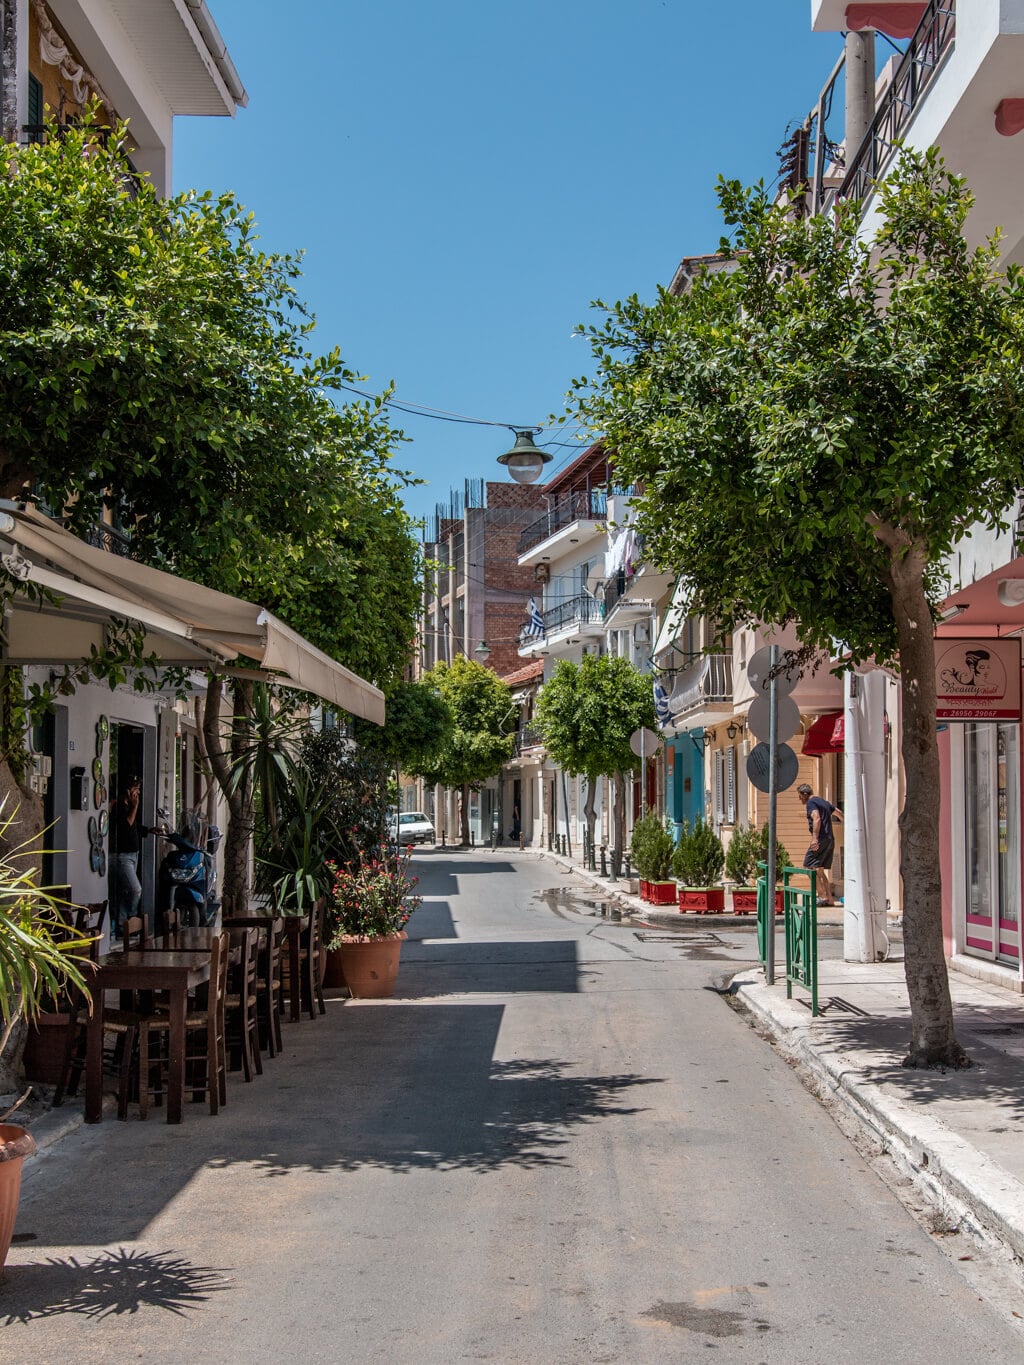 אתונה , יוון - מדריך תמונות לעיר הבירה 